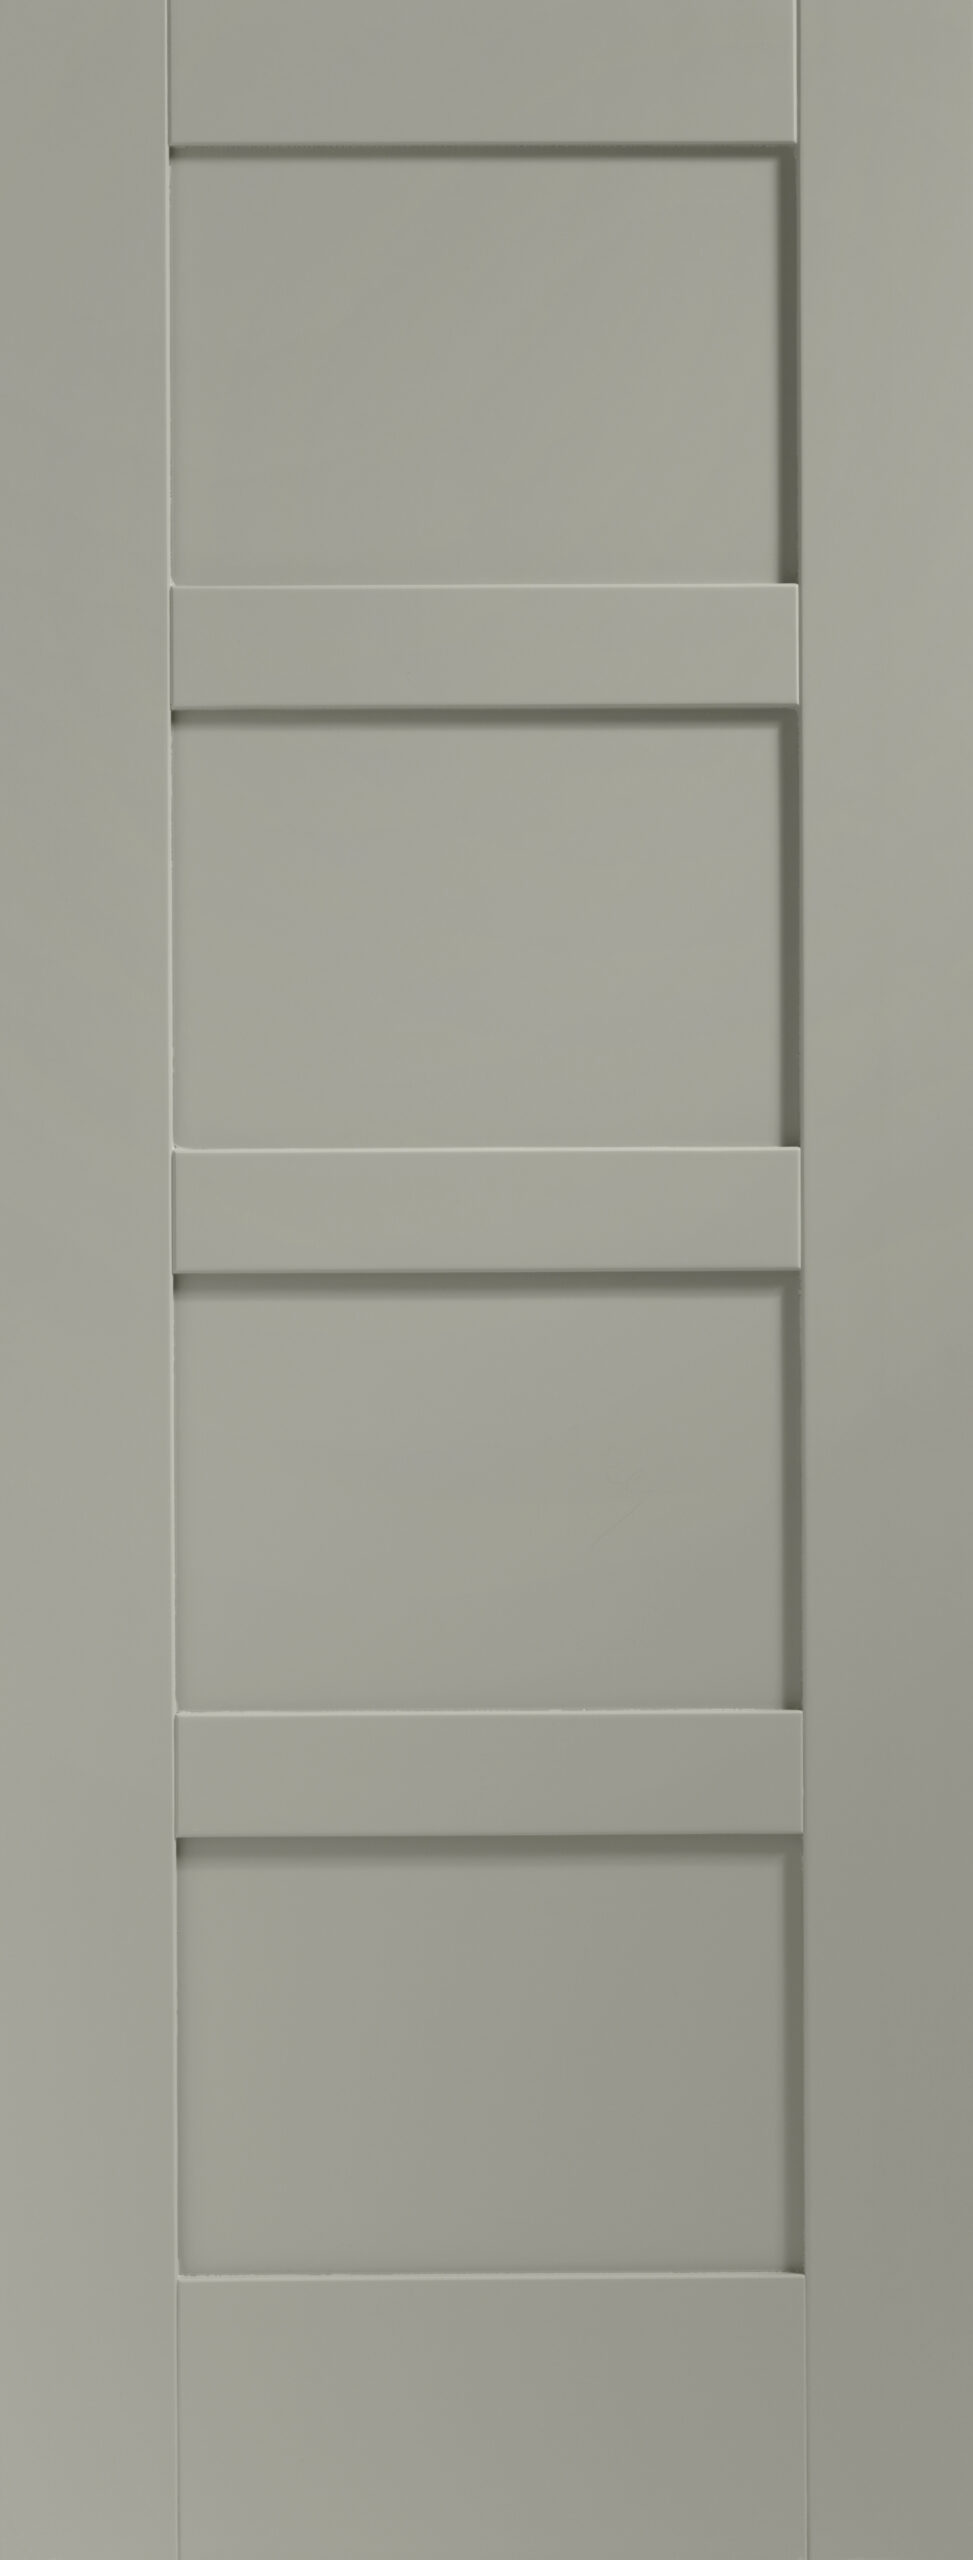 Shaker 4 Panel Internal White Primed Fire Door – Slate, 1981 x 838 x 44 mm